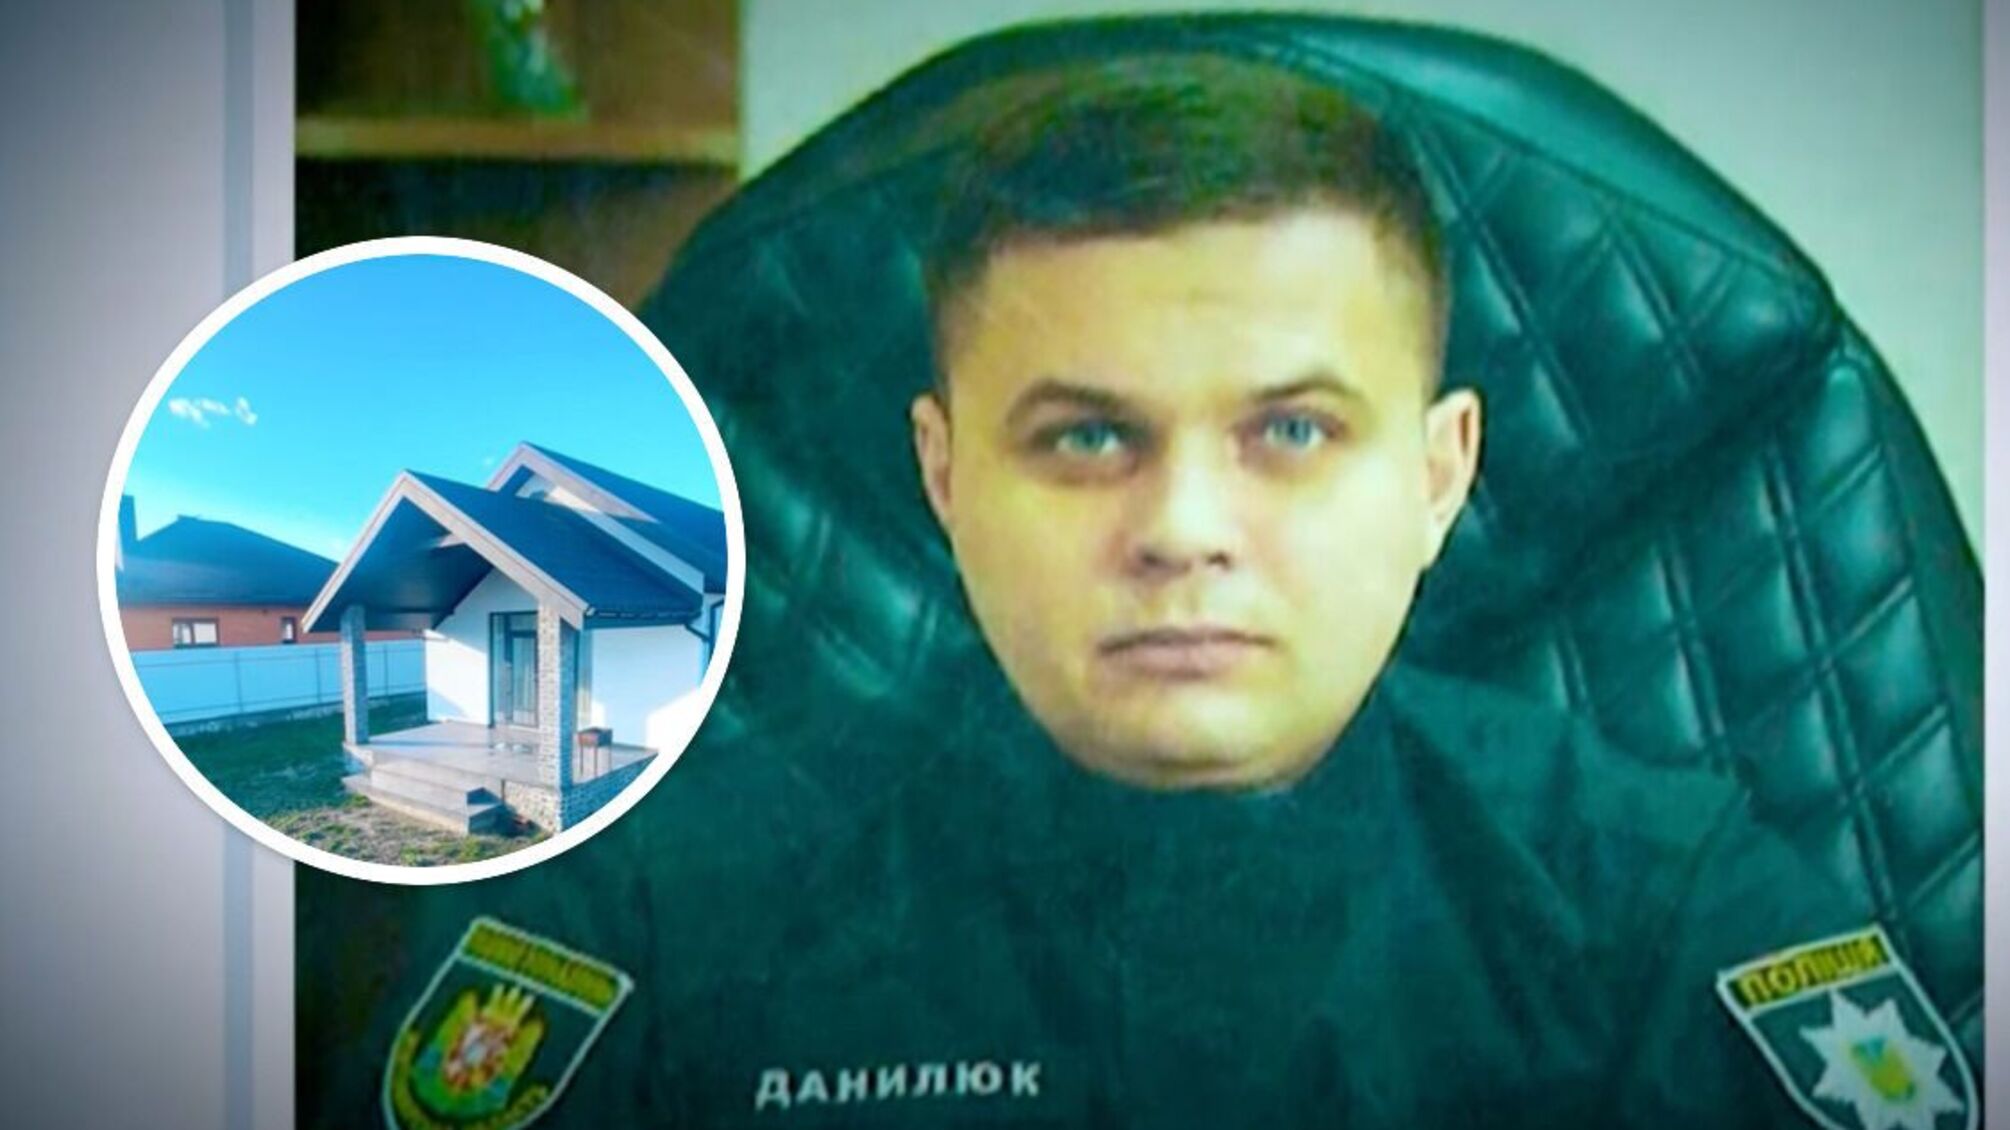 Родственницы начальника малинской полиции Данилюка стали владелицами элитной недвижимости